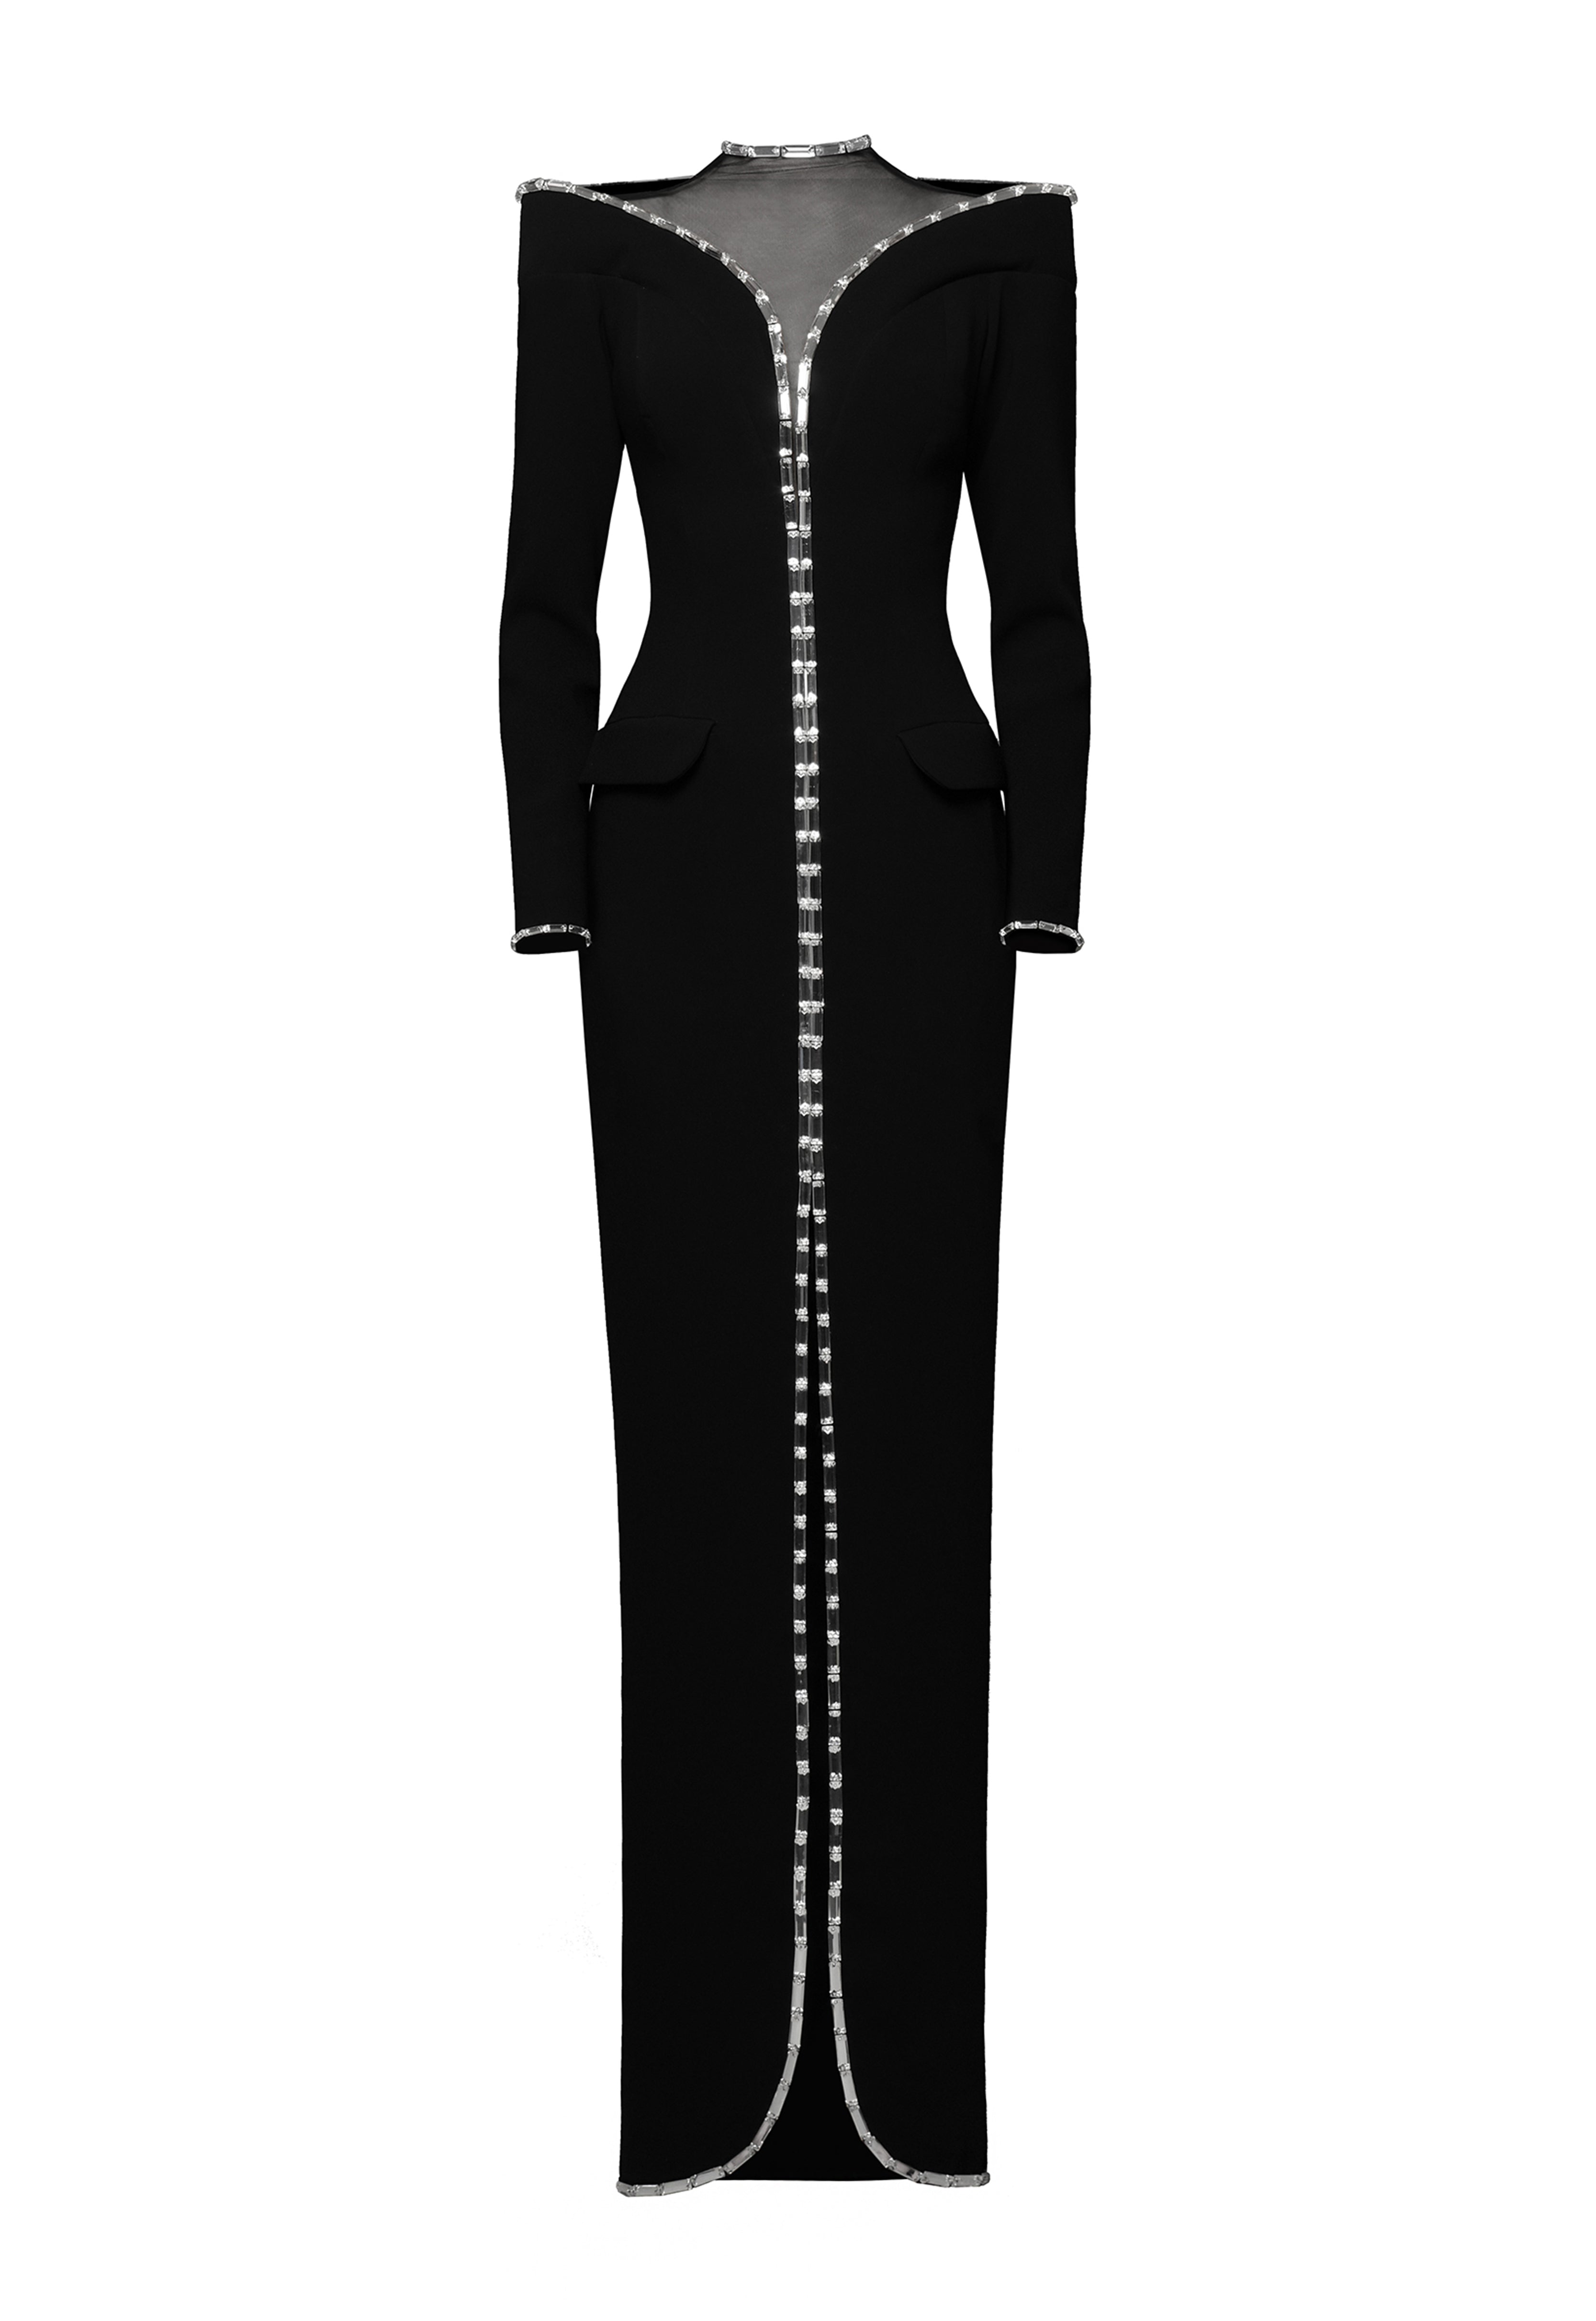 Black Crêpe Coat Dress with Crystal Baguettes Outline.